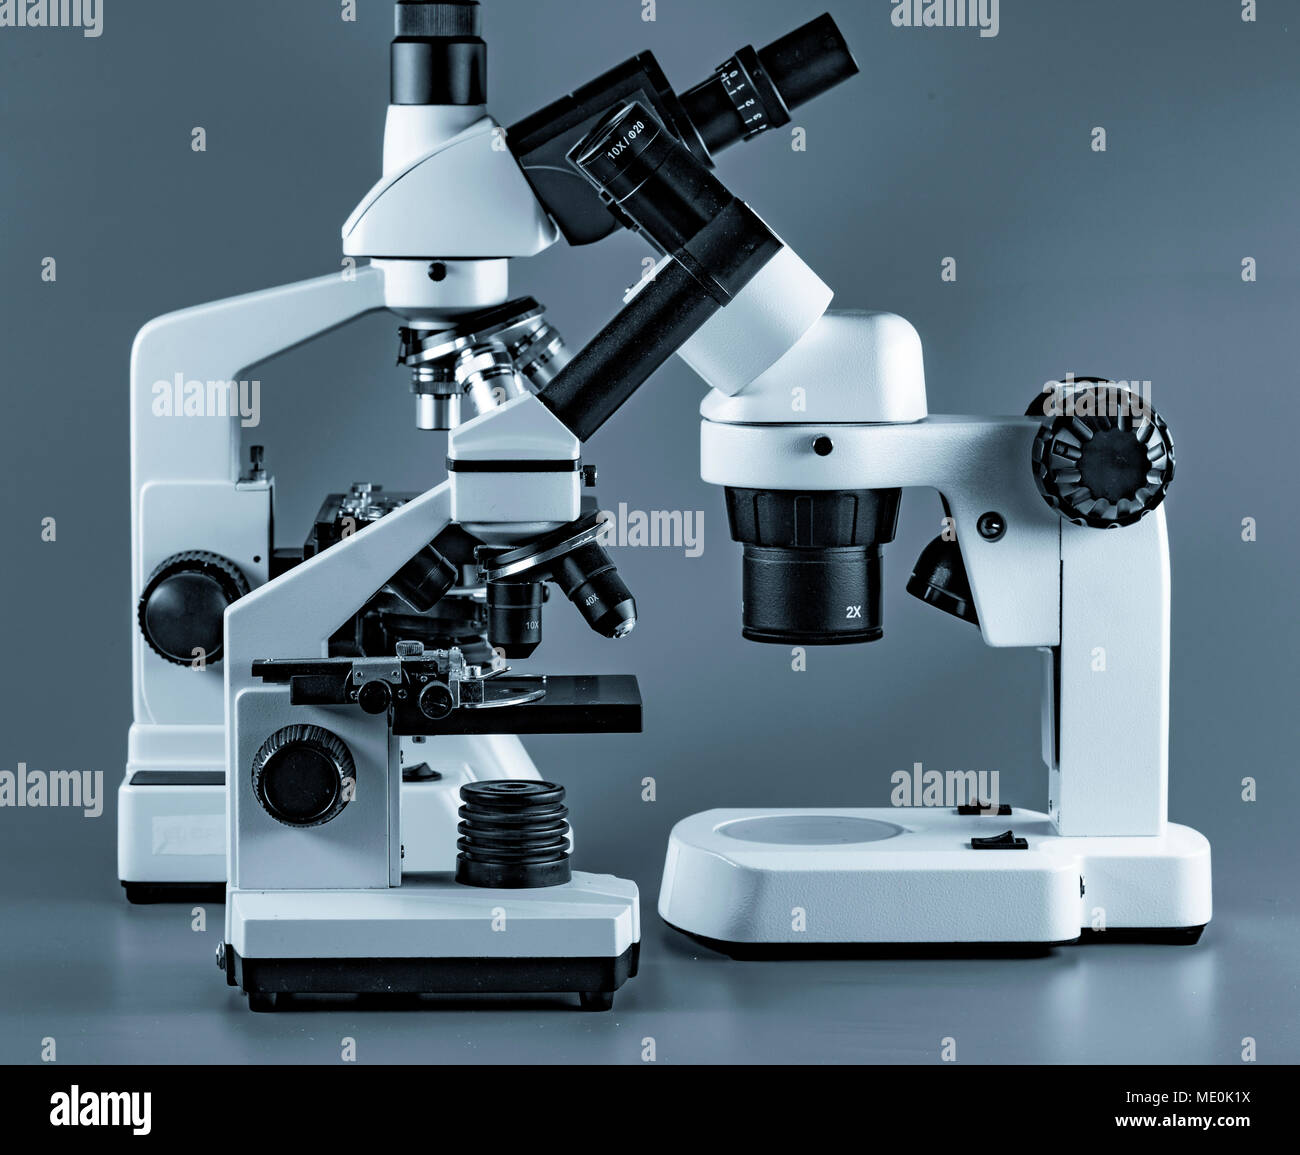 Light microscopes. Stock Photo